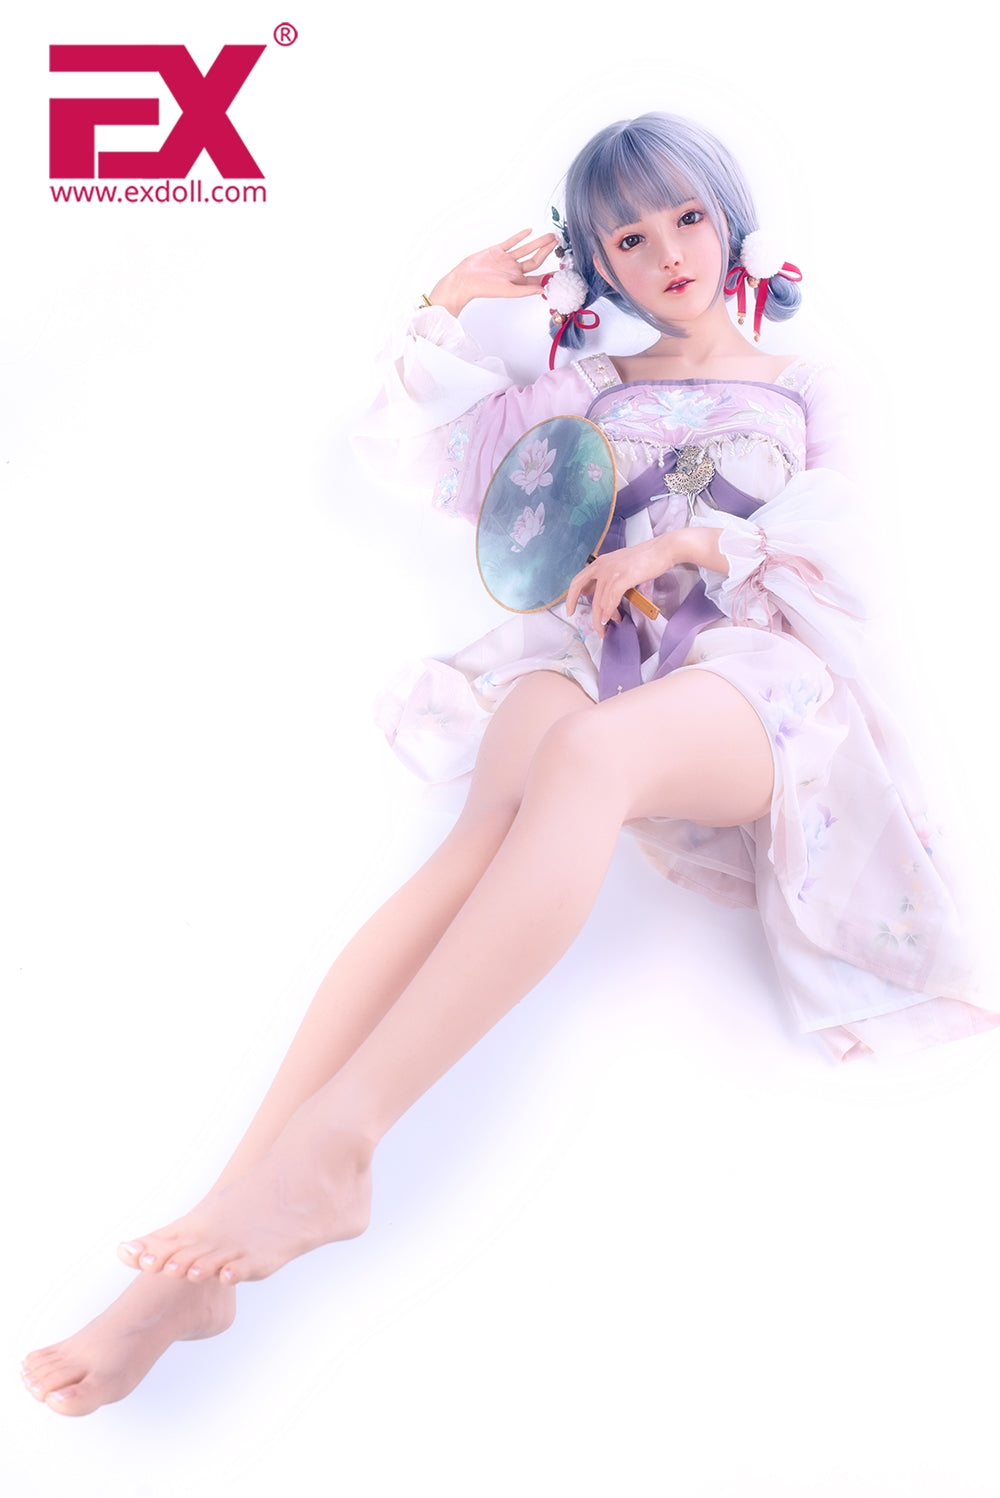 EX Doll Summit Series 149 cm Silicone - Lily | Sex Dolls SG